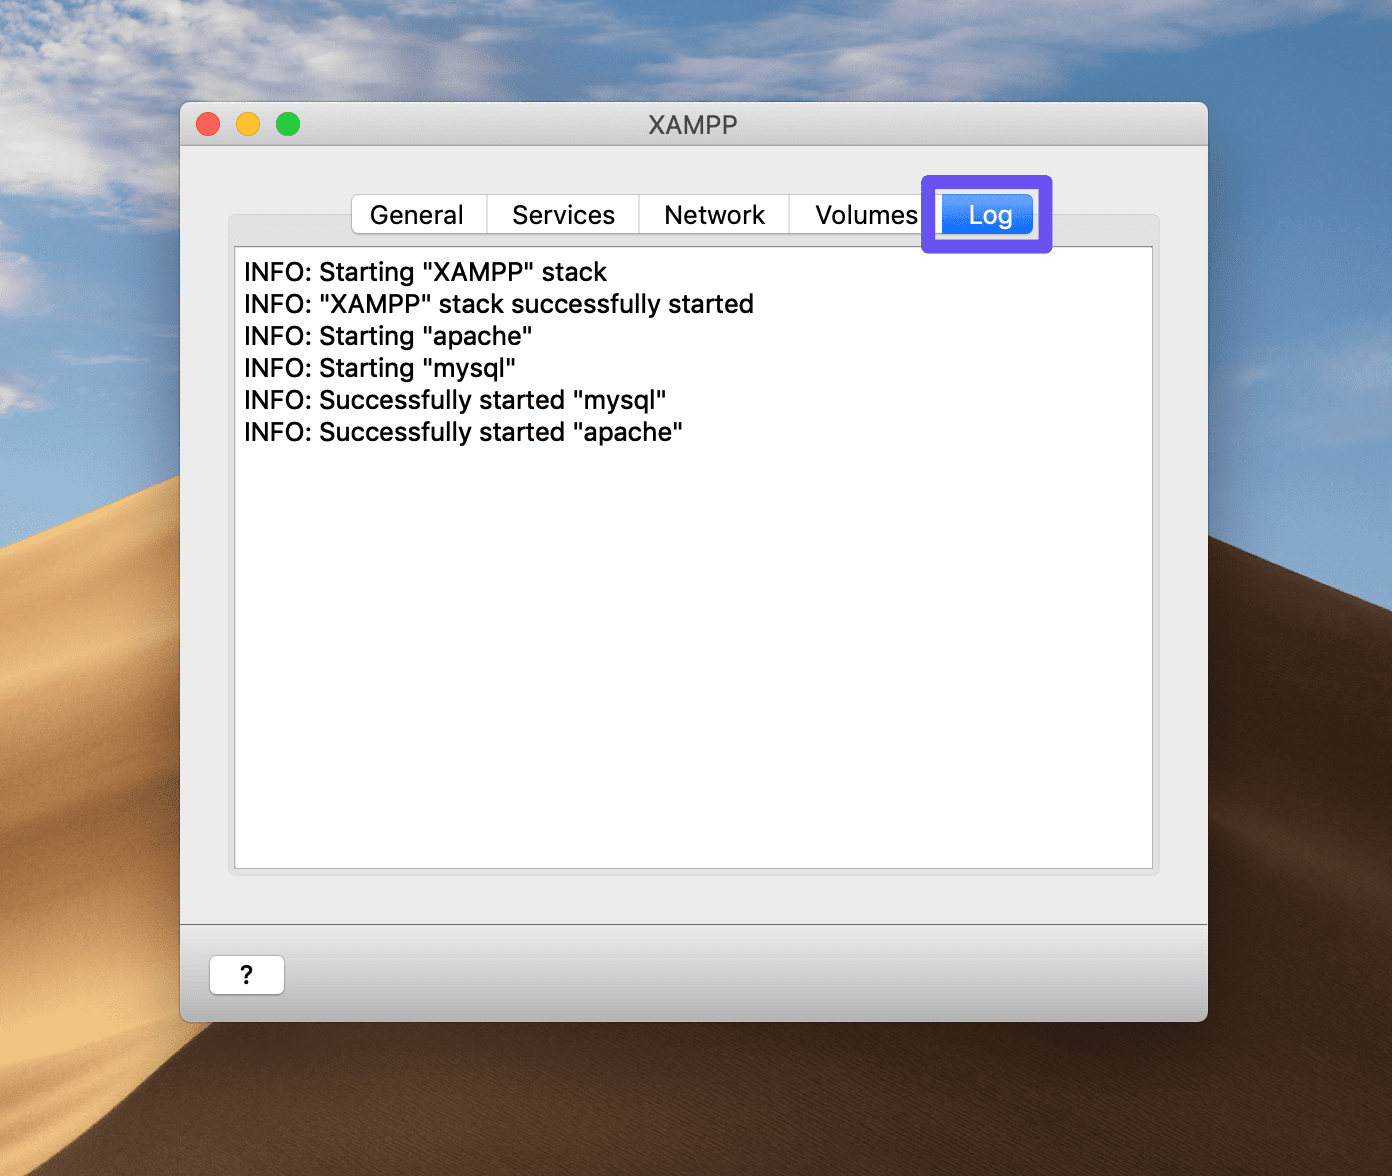 Het Log tabblad van het configuratiescherm van XAMPP in macOS